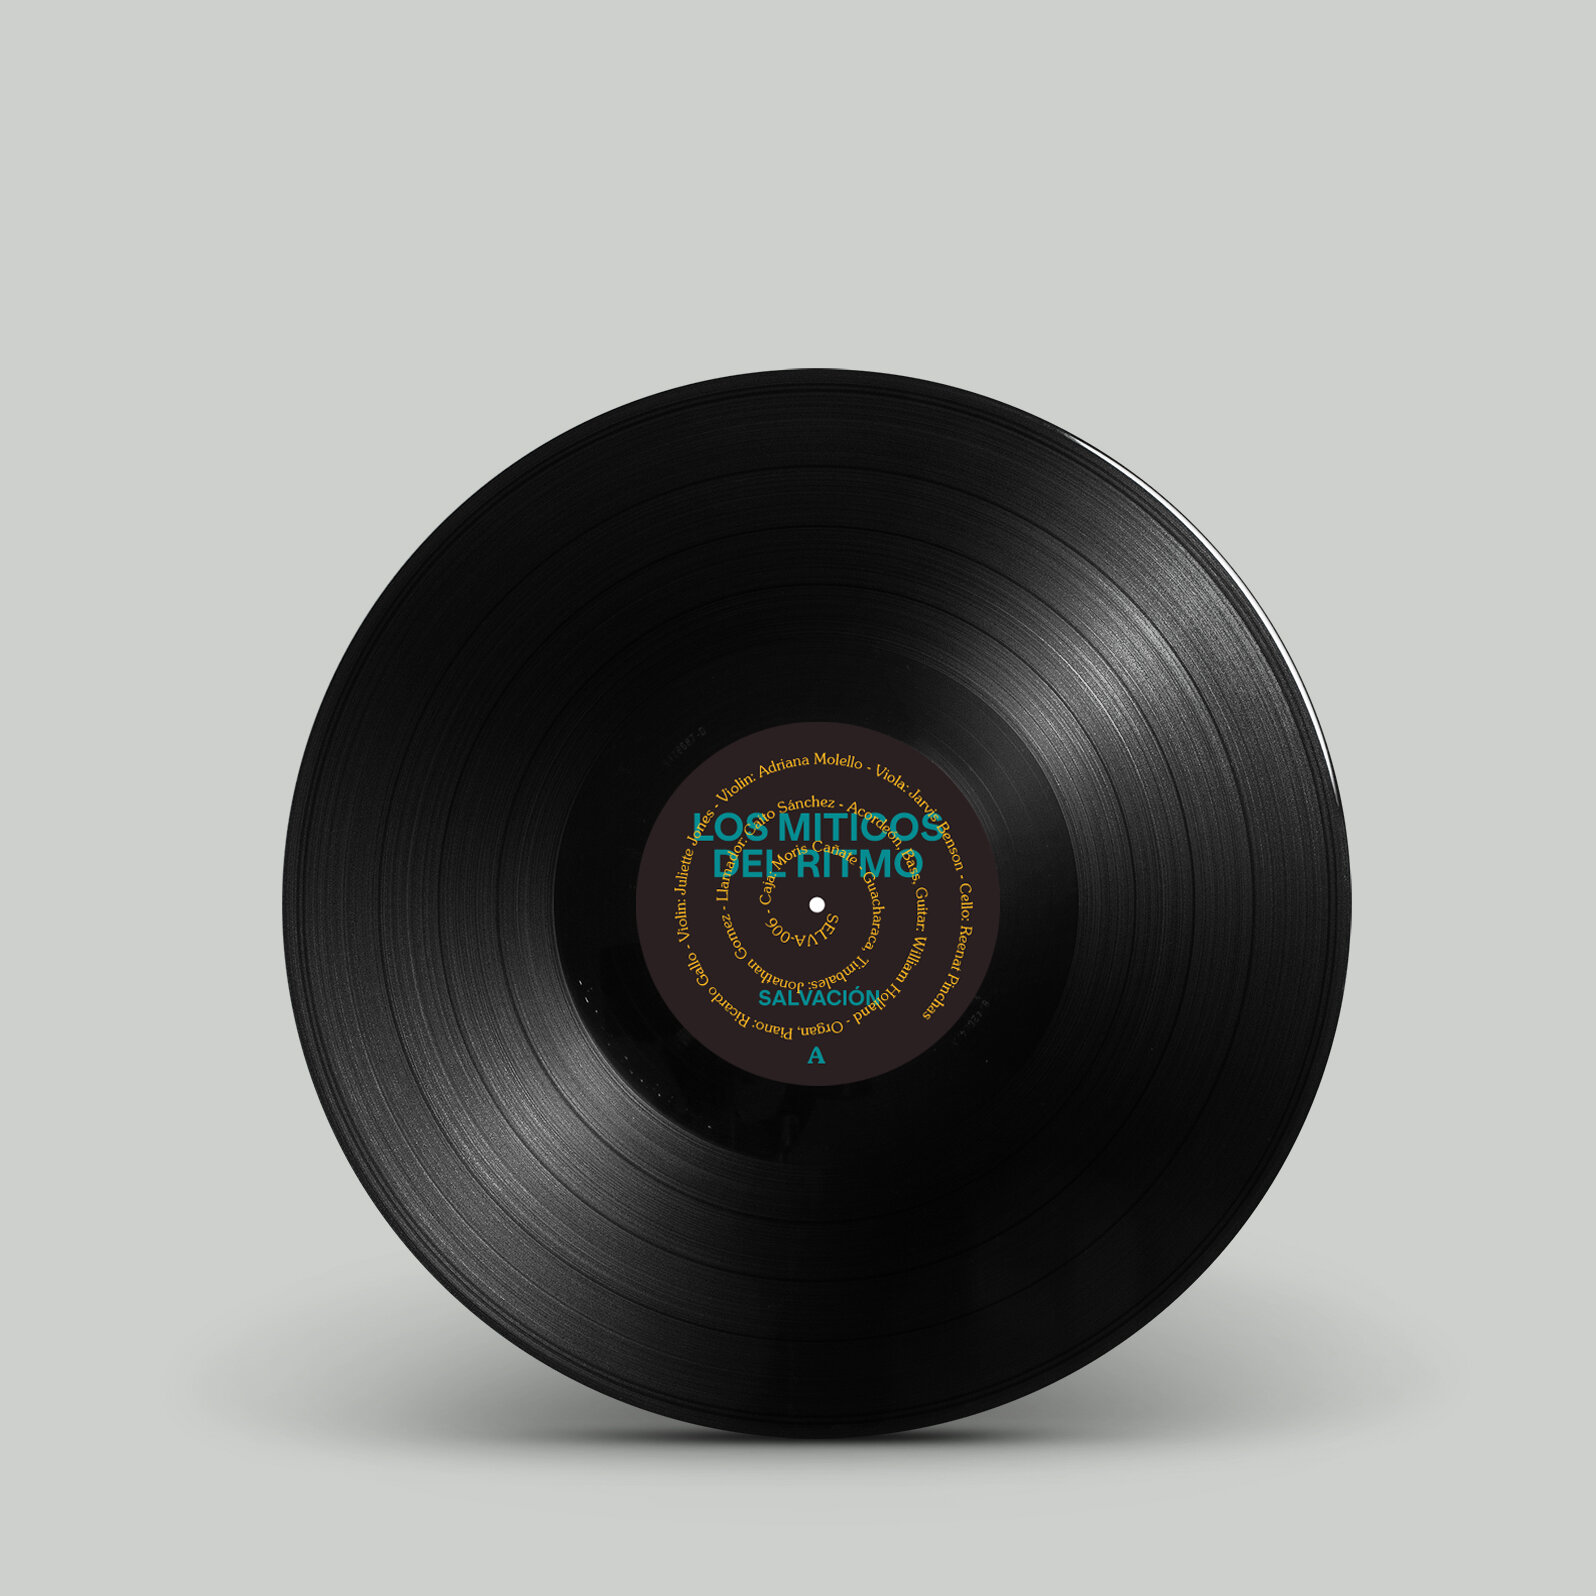 Vinyl Record-A.jpg